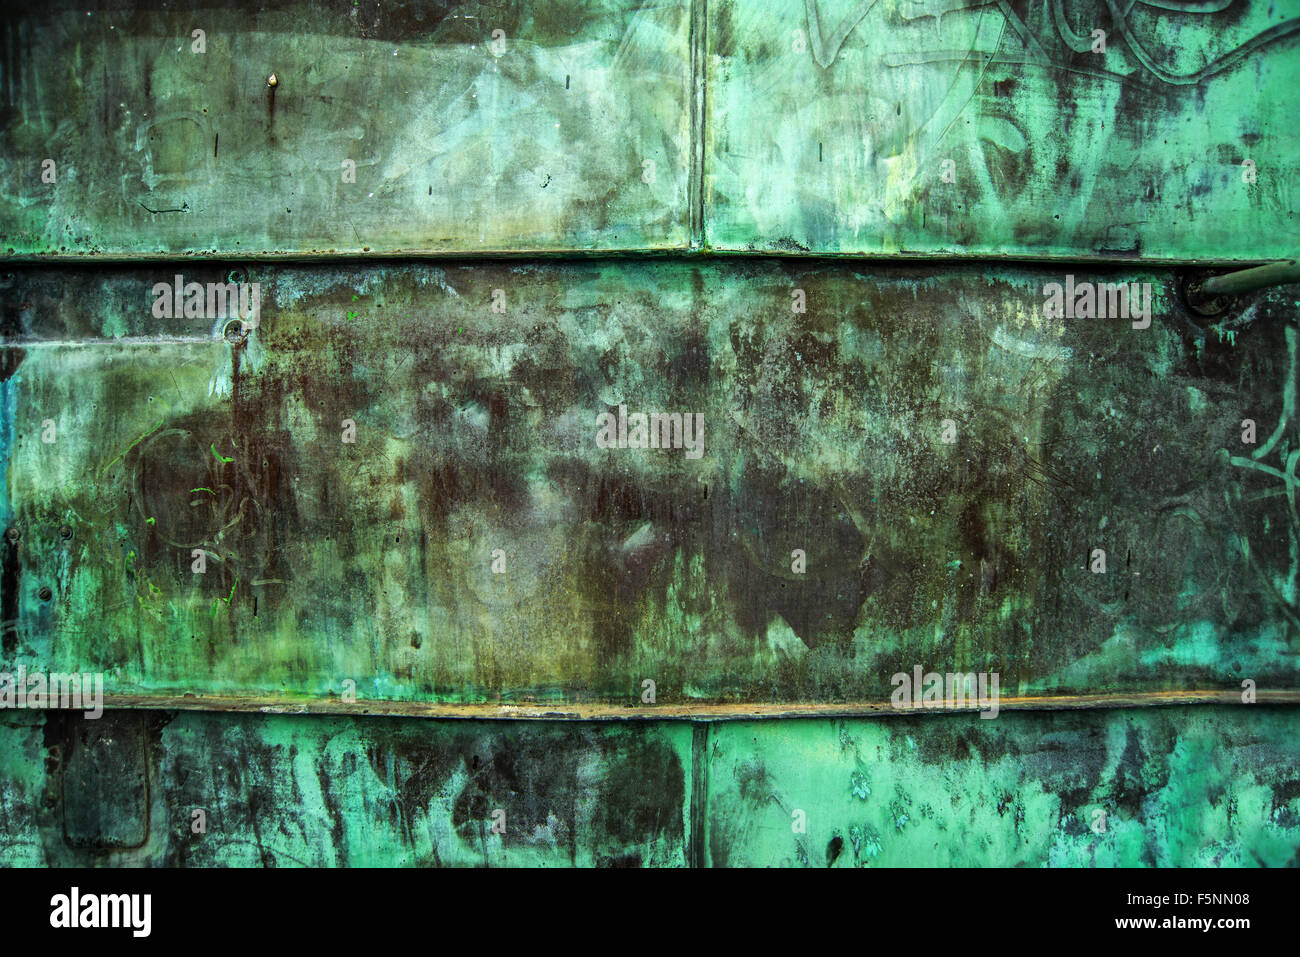 Plaque de métal cuivre vert oxydé comme texture de fond rustique industriel Banque D'Images